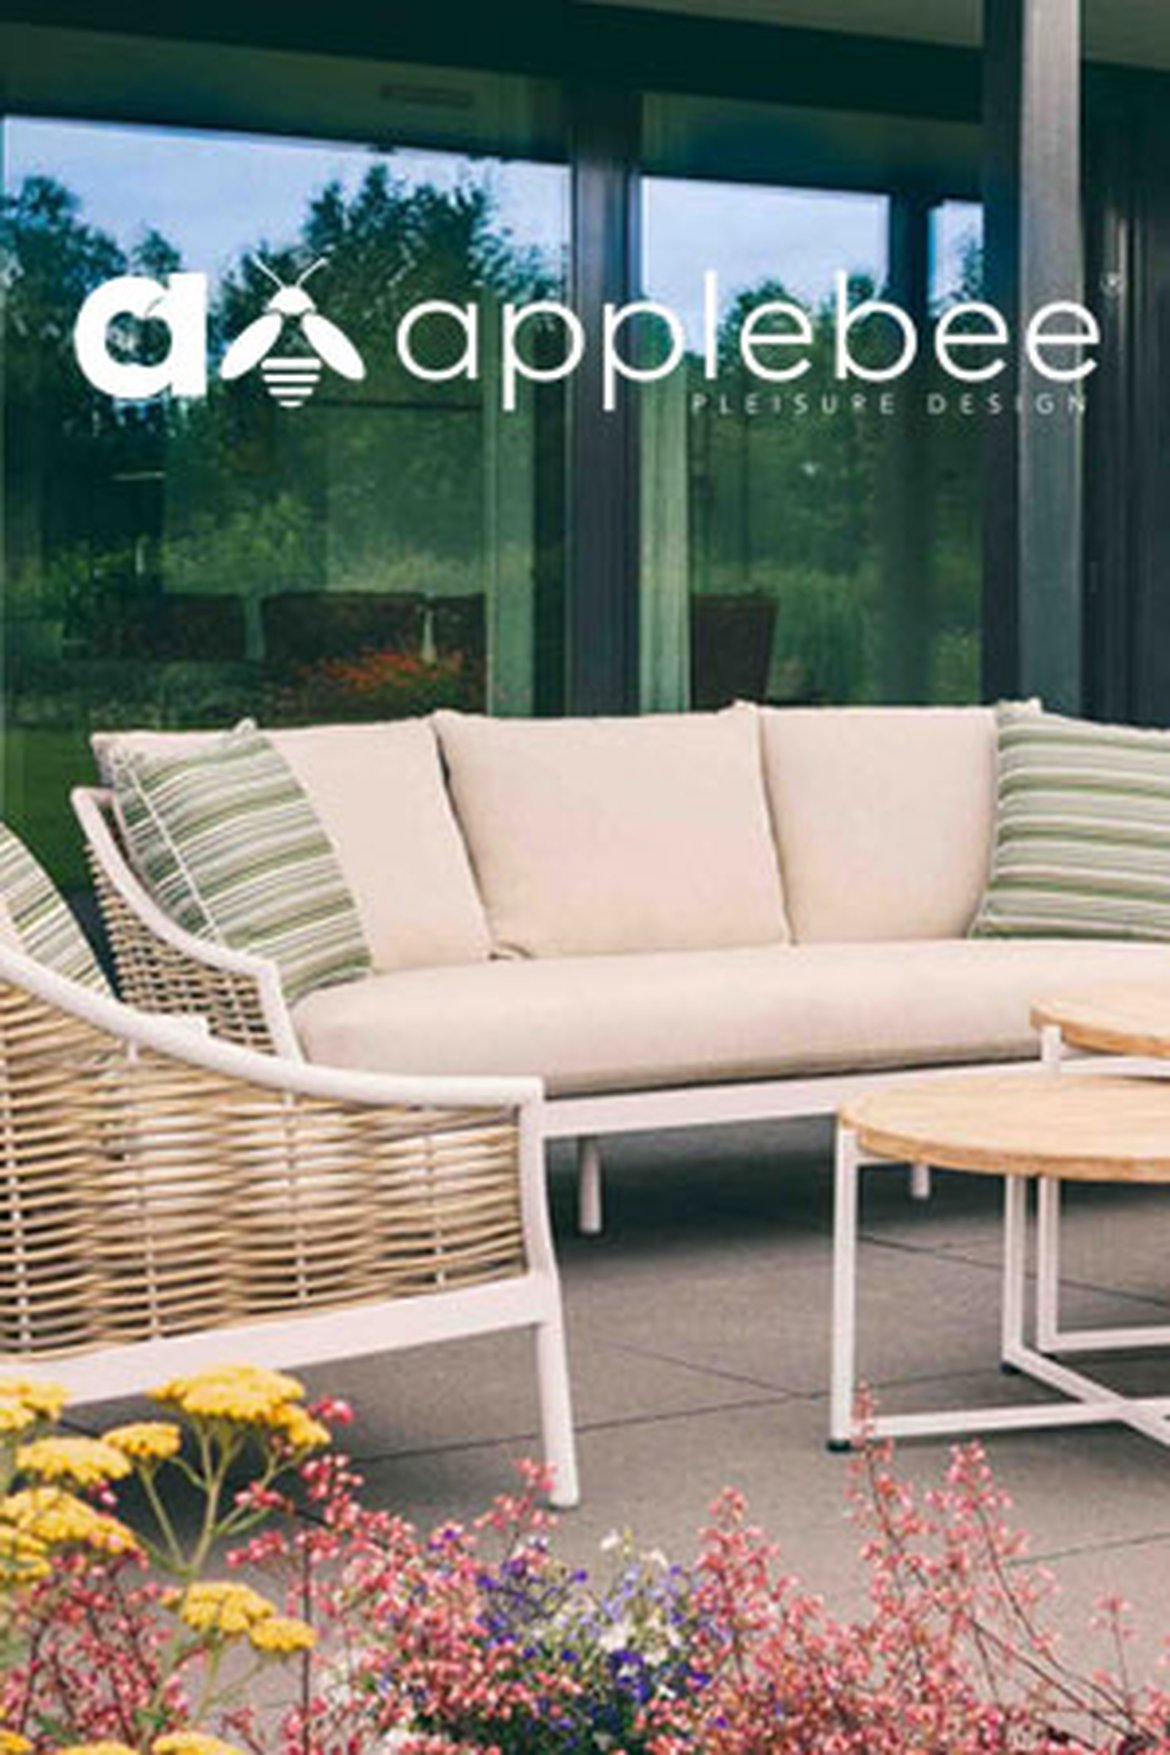 Applebee - meuble d'exterieur, meuble de jardin, des meubles de jardin uniques, original - Schilliger